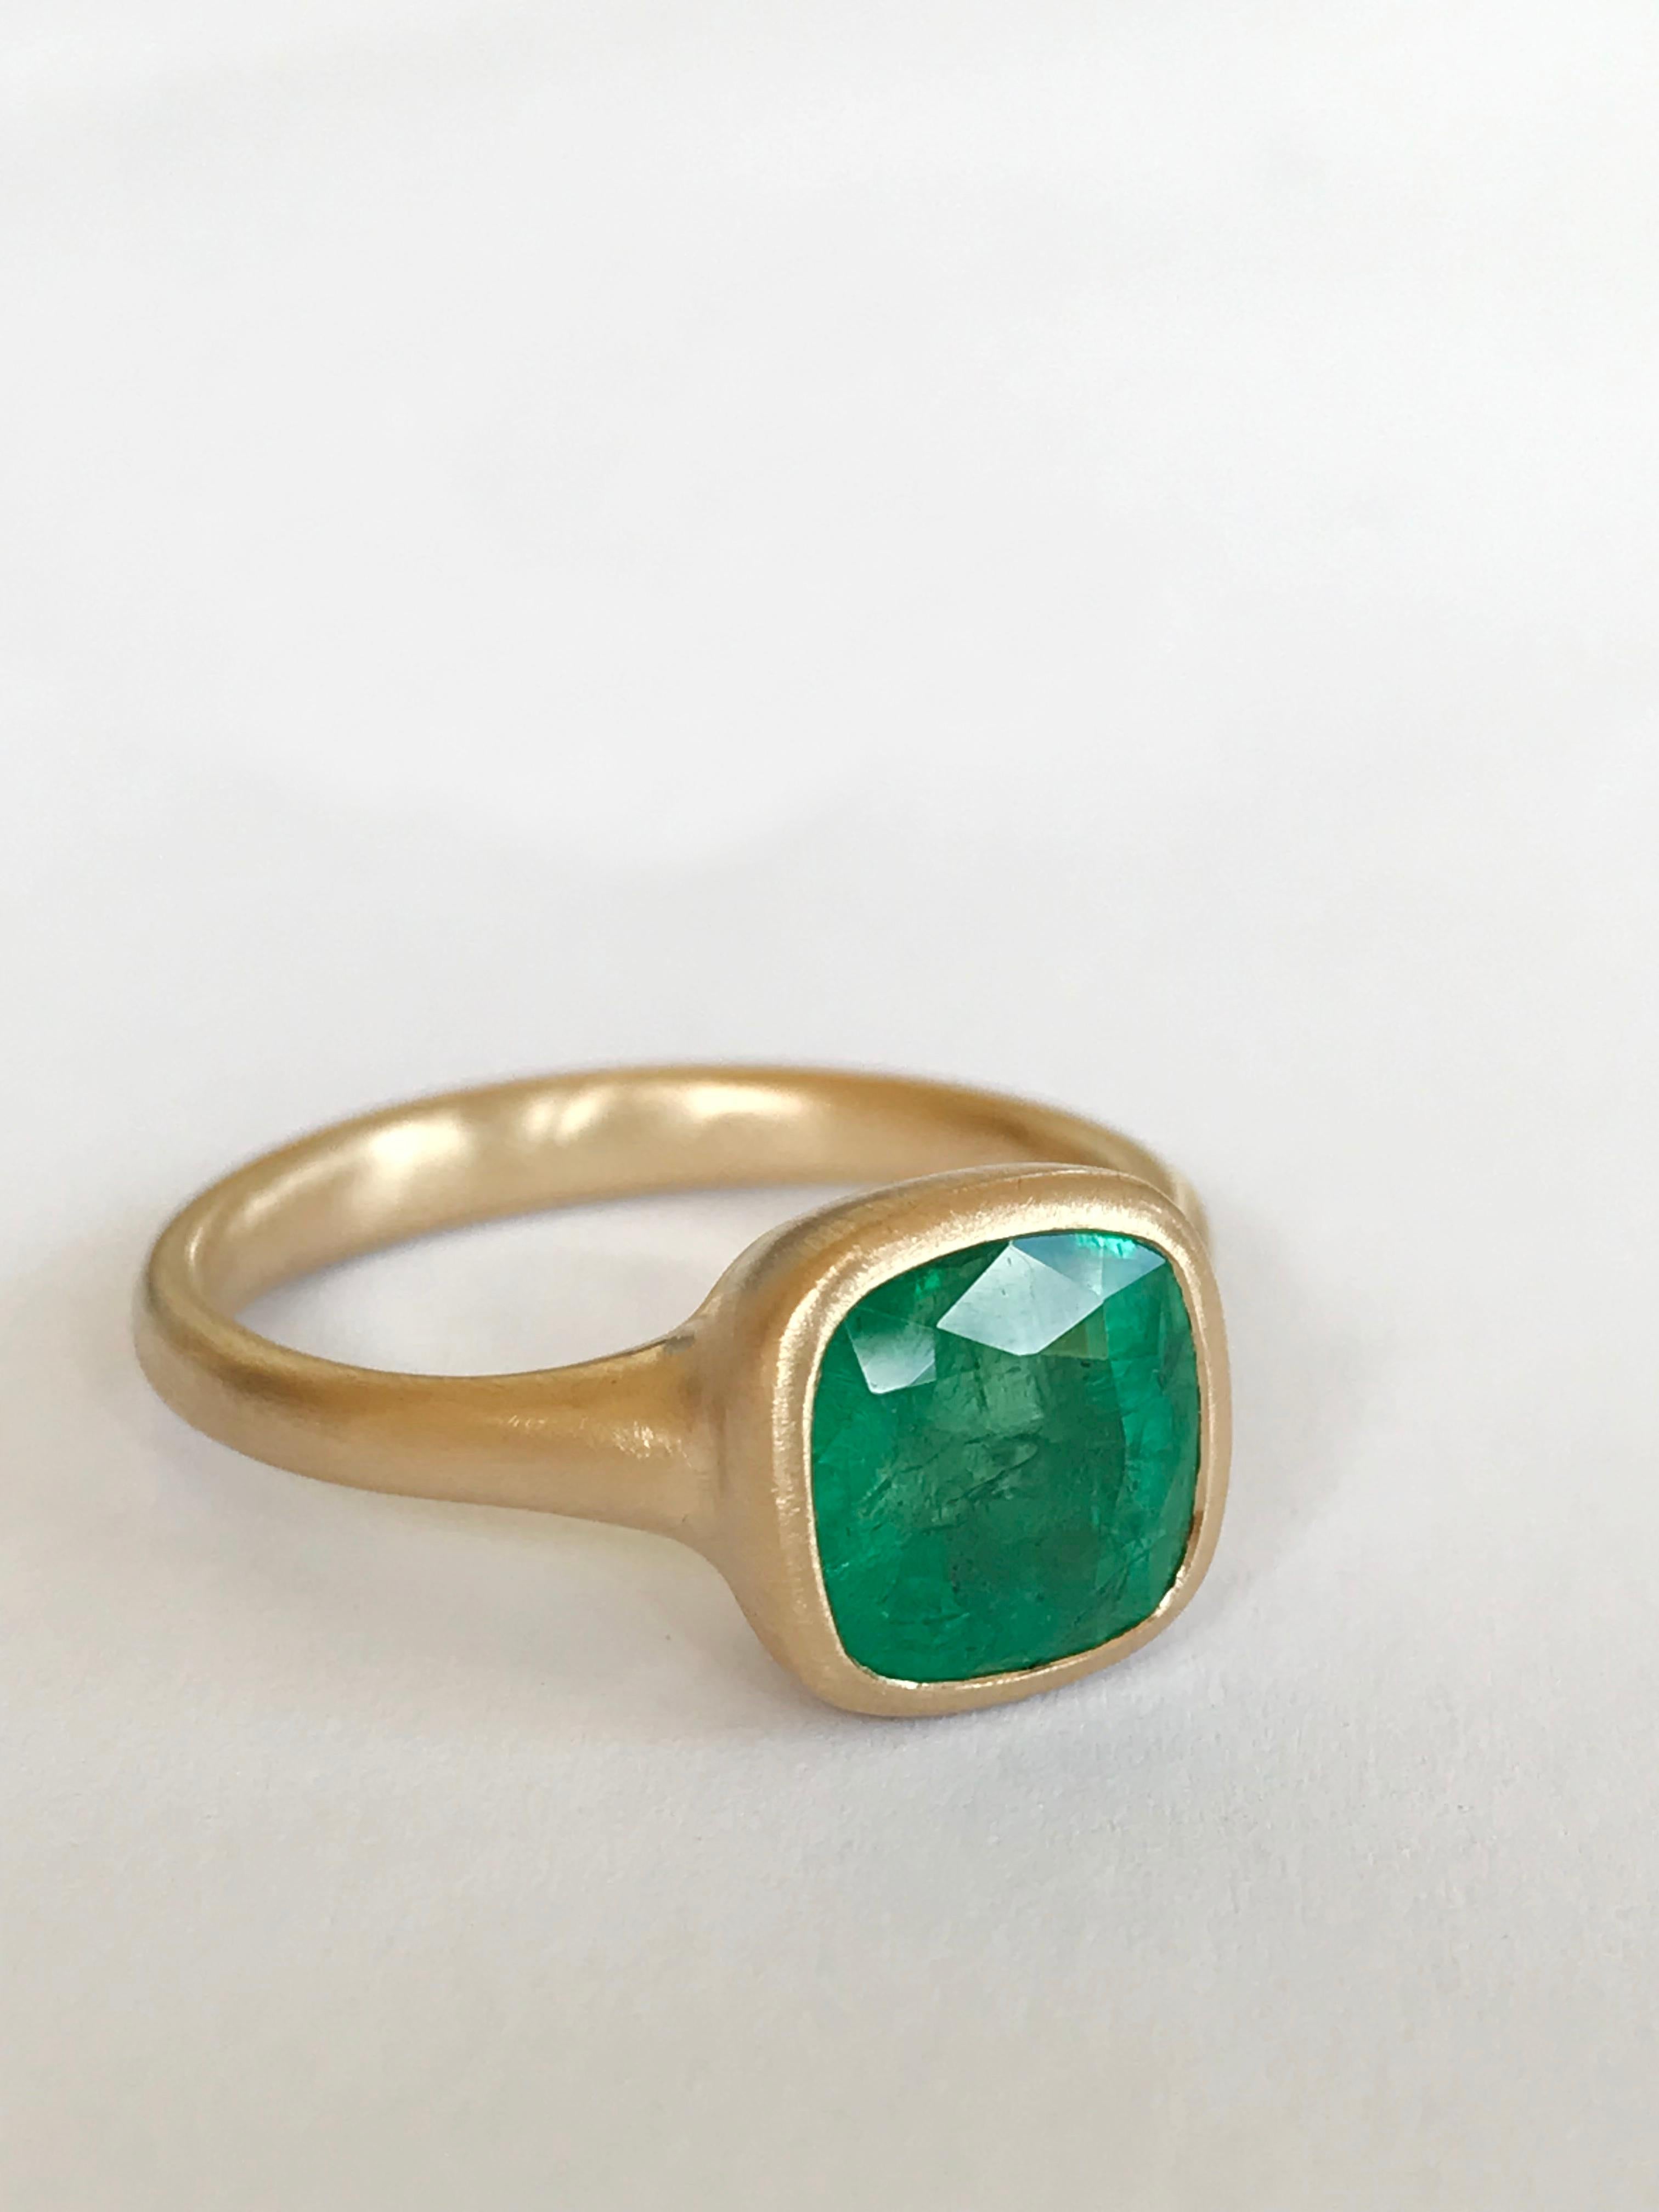 Dalben 2, 84 Carat Emerald Yellow Gold Ring 1